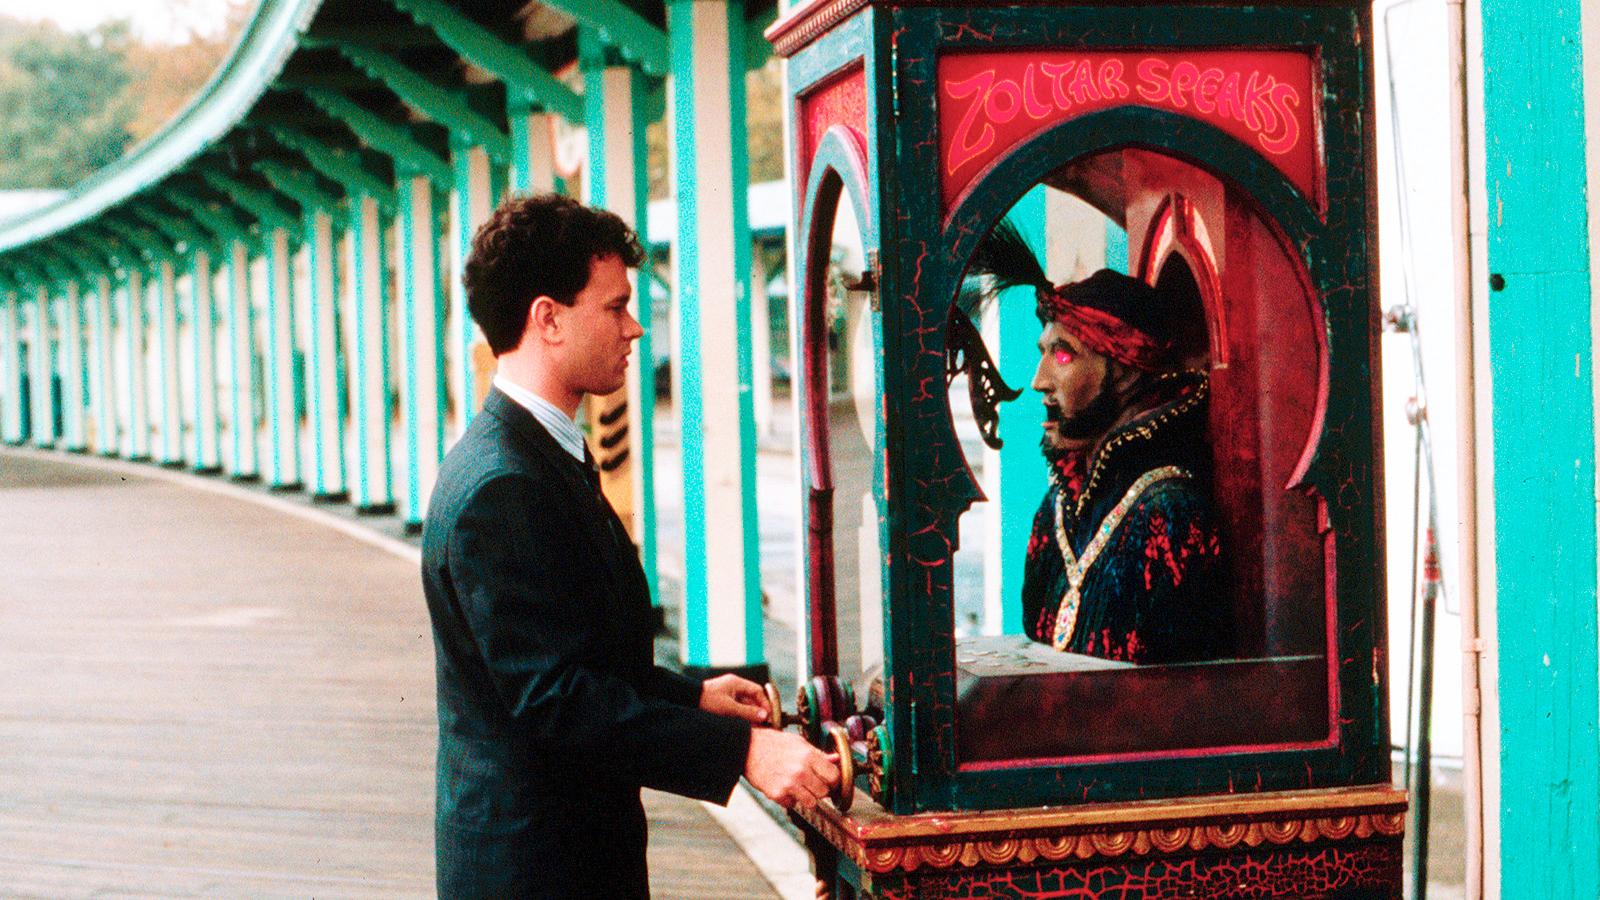 Penny Marshall regisserade bland annat filmen ”Big¡ med Tom Hanks i huvudrollen (1988).